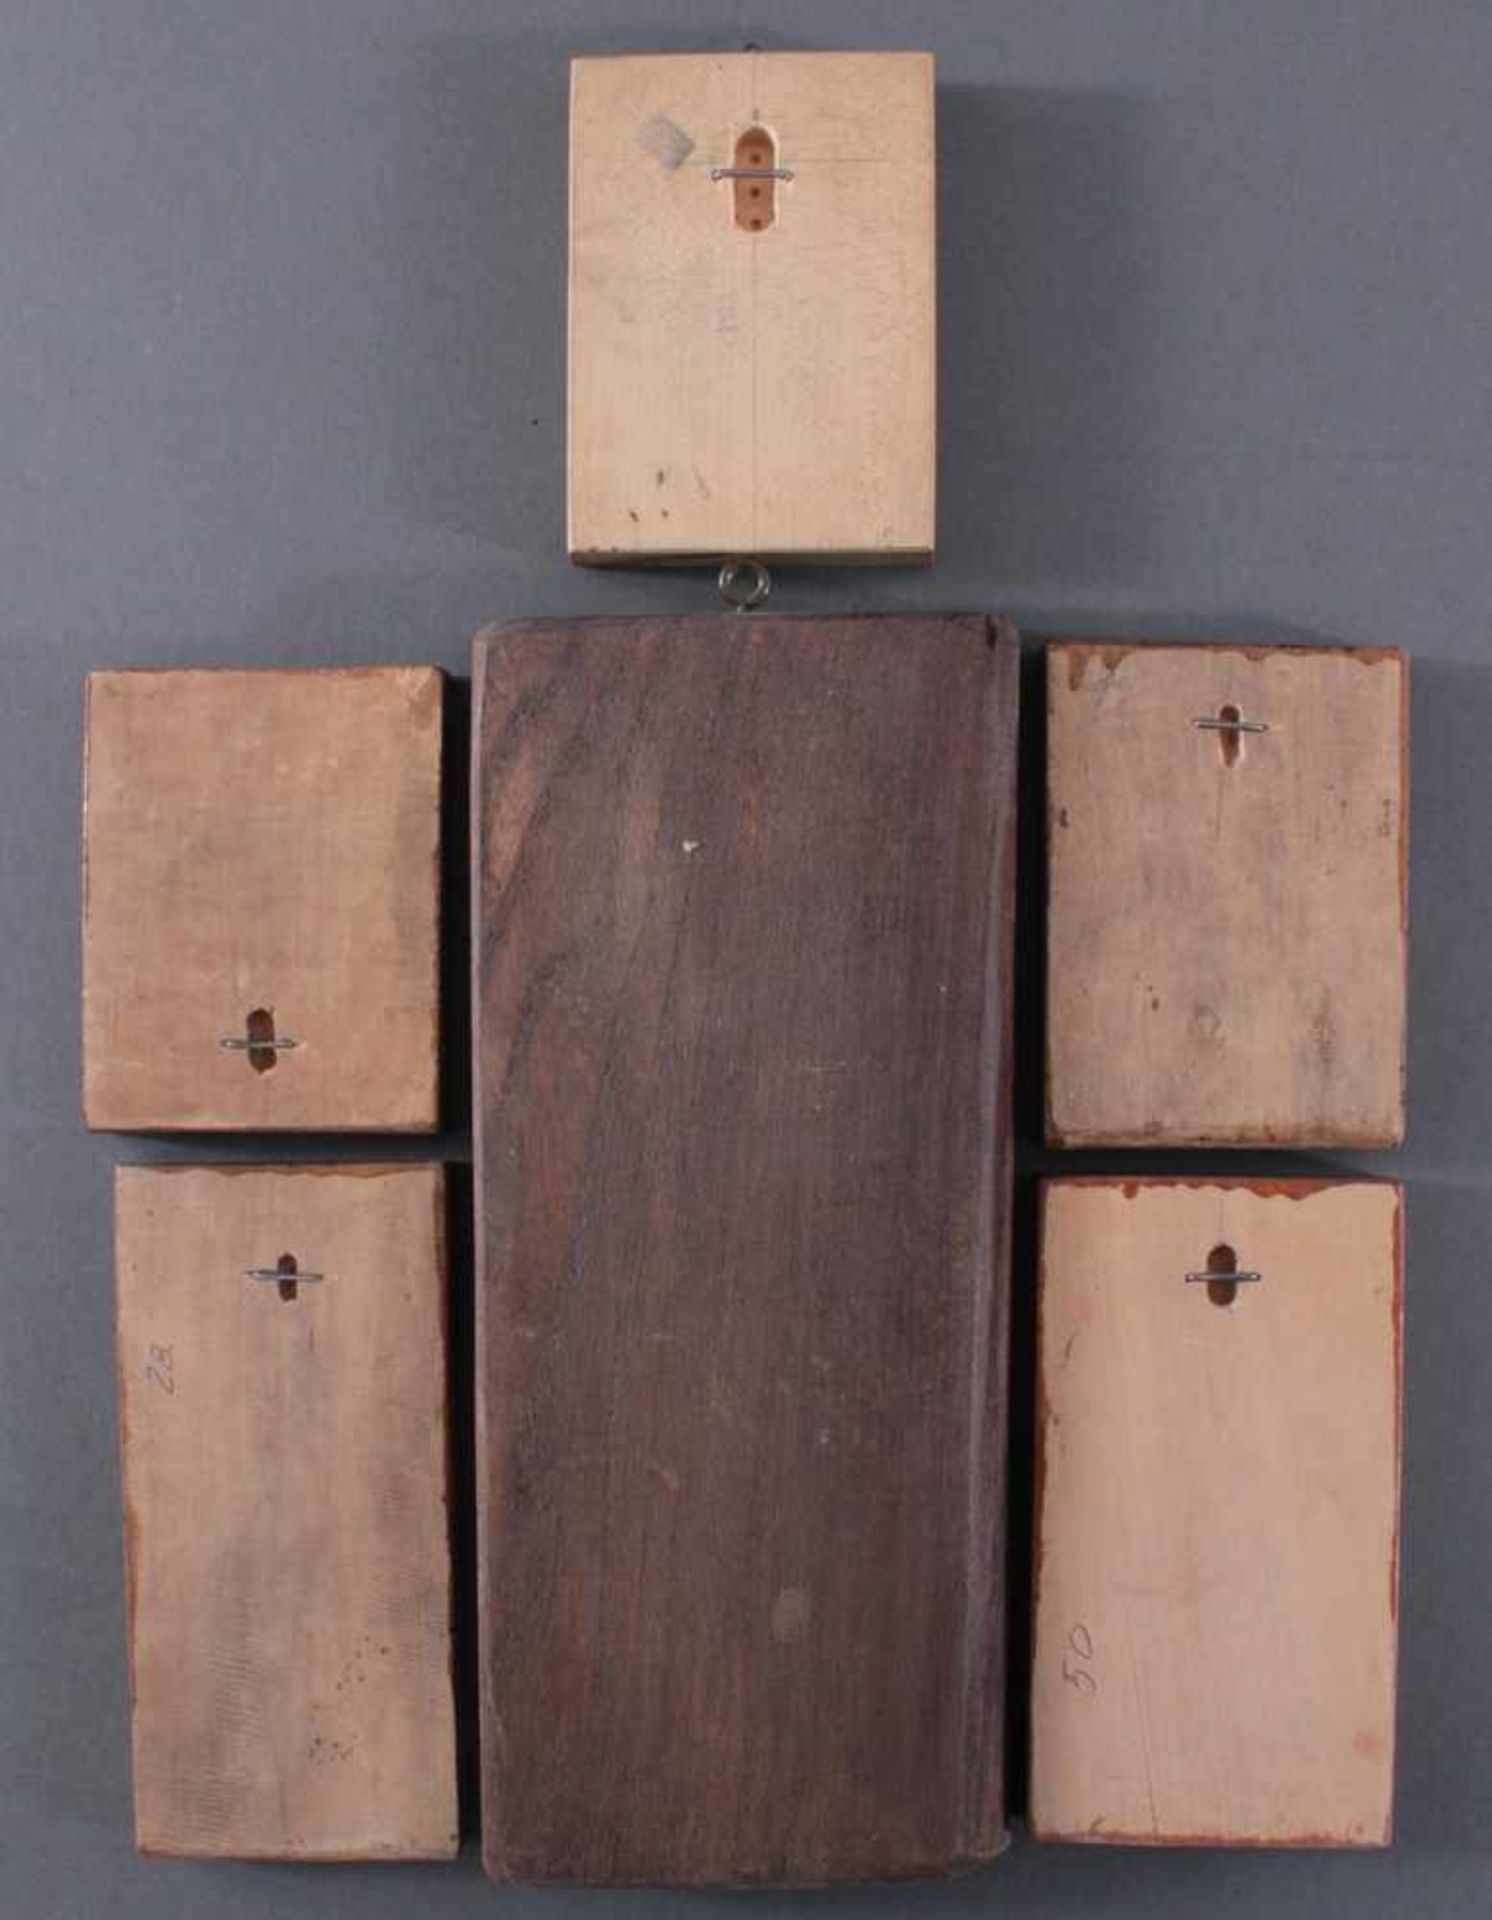 Holzmodeln6 Stück, Holz beschnitzt, für Springerle. Verschieden Formen und Größen - Bild 2 aus 2